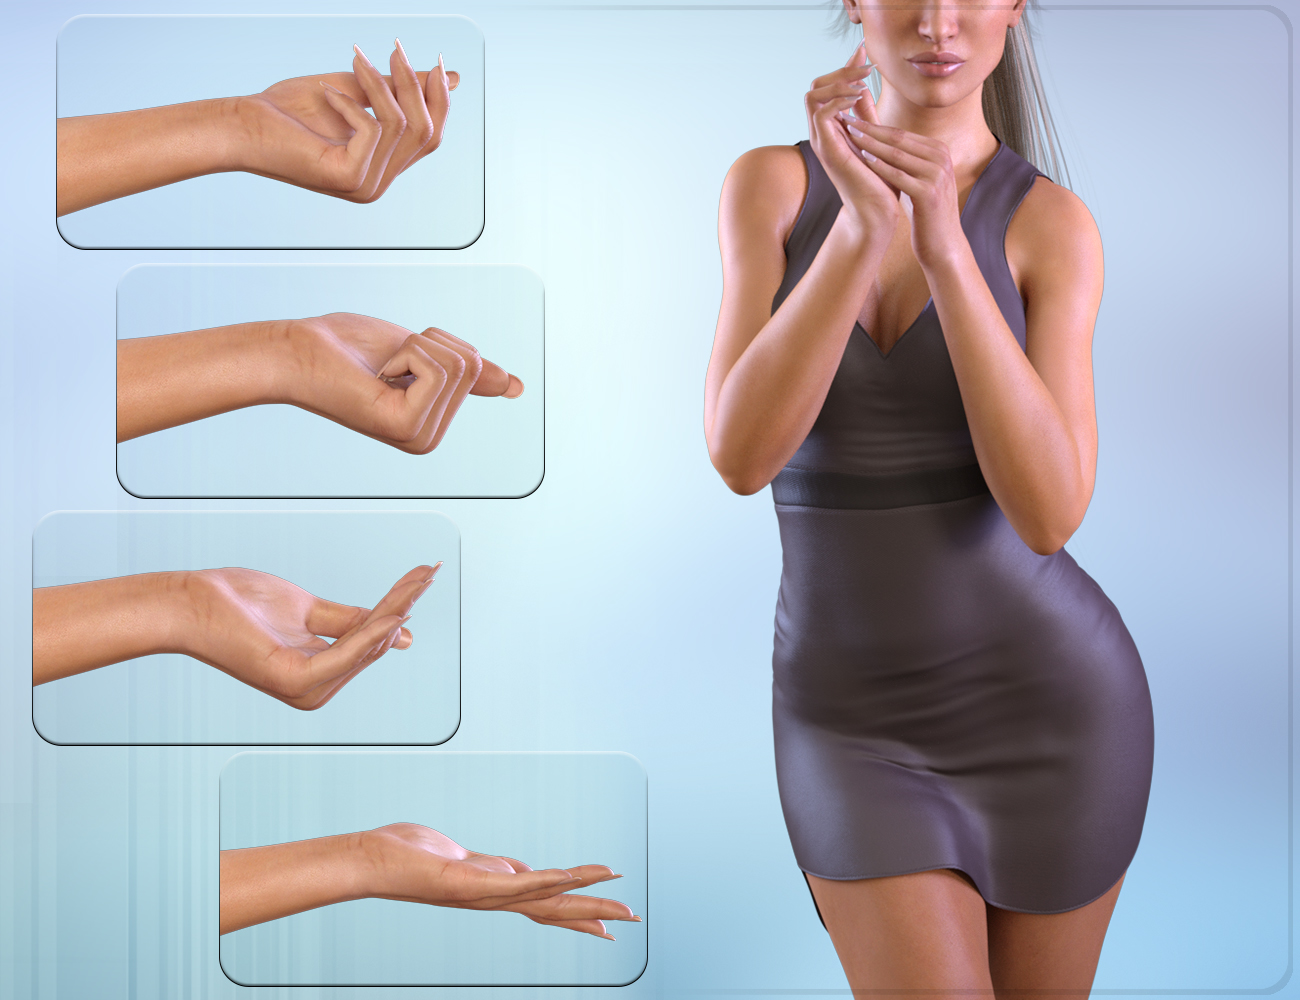 Z Posing Hands for the Genesis 3 Female(s) by: Zeddicuss, 3D Models by Daz 3D